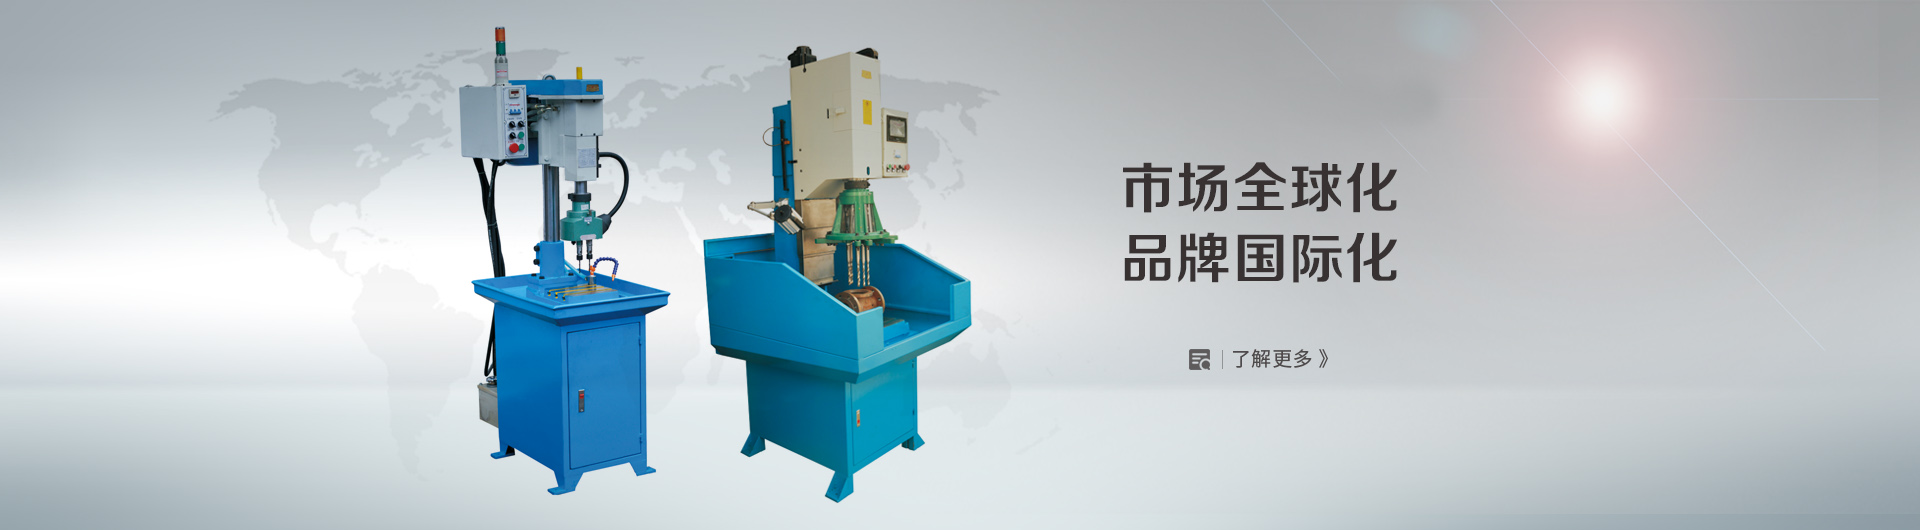 Zhejiang Yongxing Bench Orill Manufacturing Co.,Ltd.